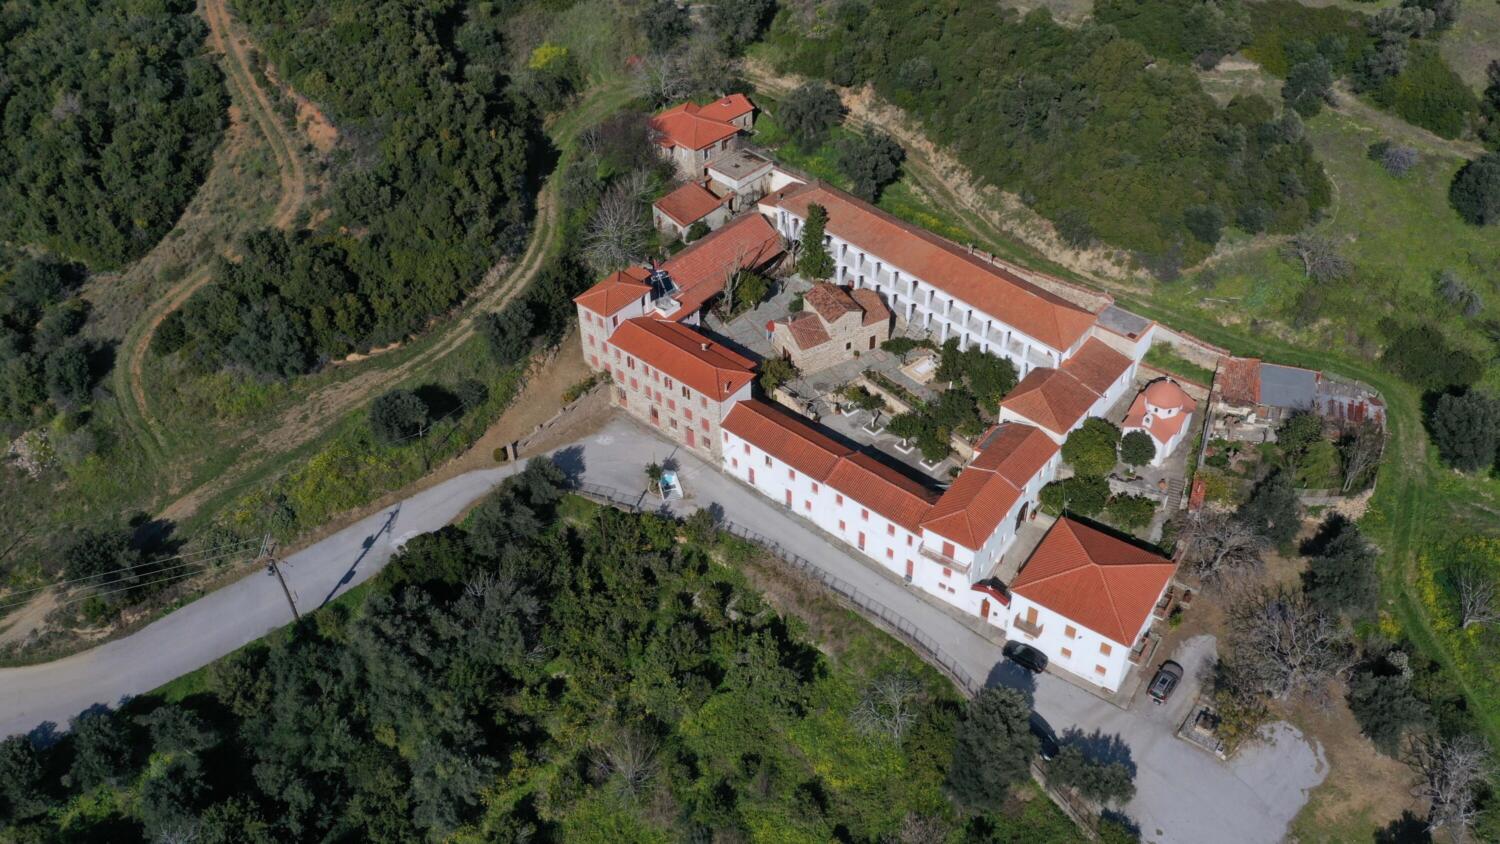 Μονή Μάντζαρη στο χωριό Οξύλινθος. Φωτογραφία: ©Βασίλης Συκάς, για τον Δήμο Κύμης-Αλιβερίου